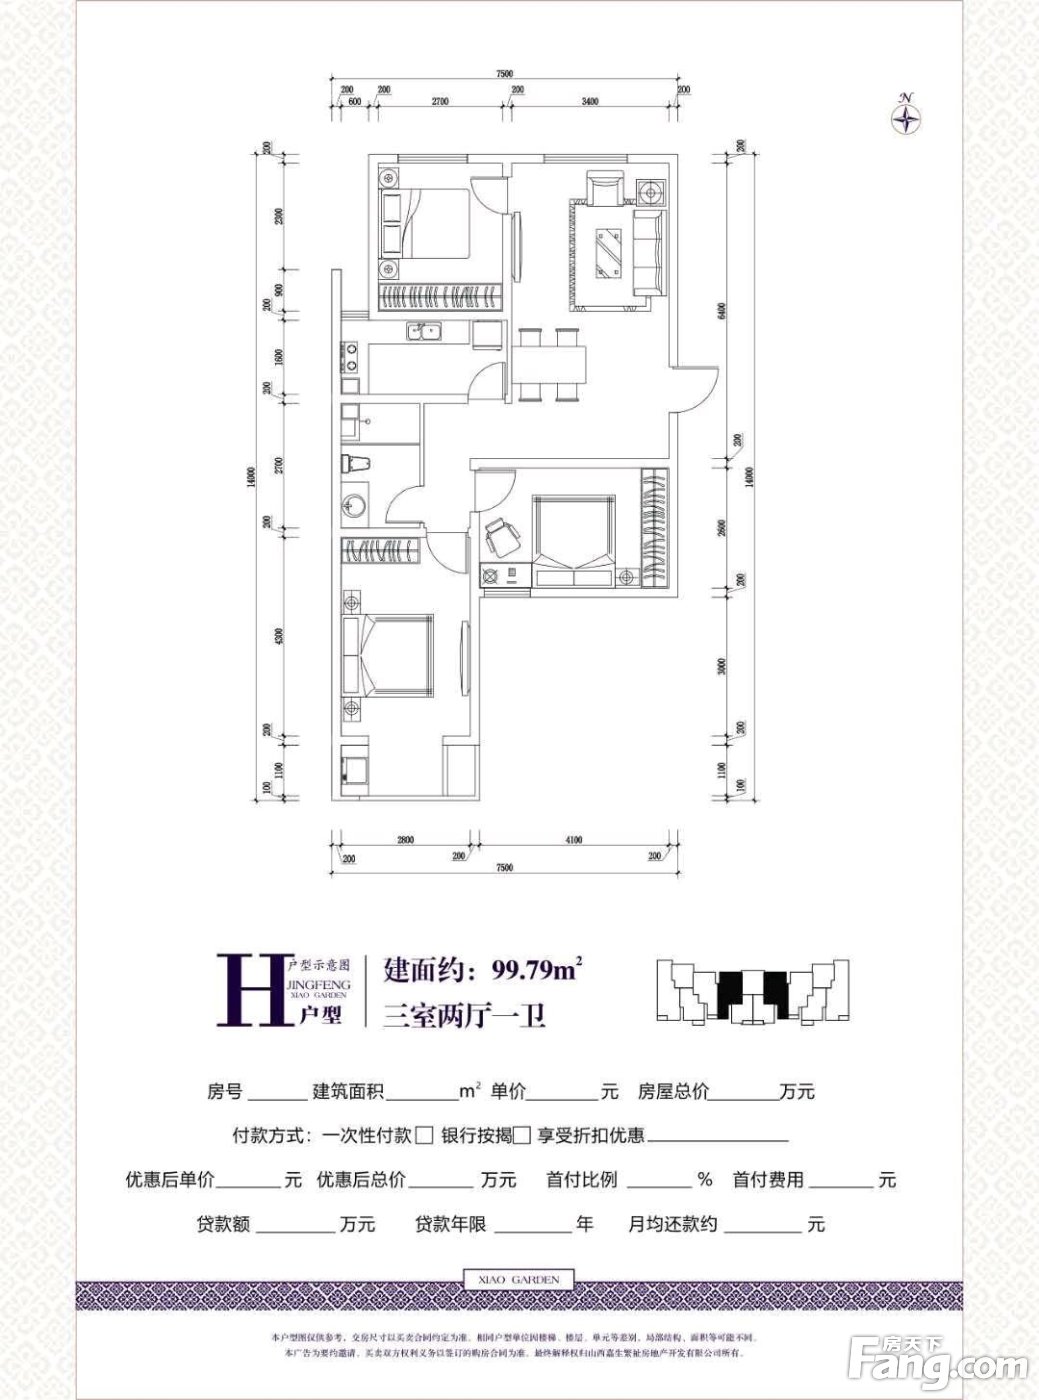 置业顾问韩燕兵发布了一条晶峰·晓园的抖房